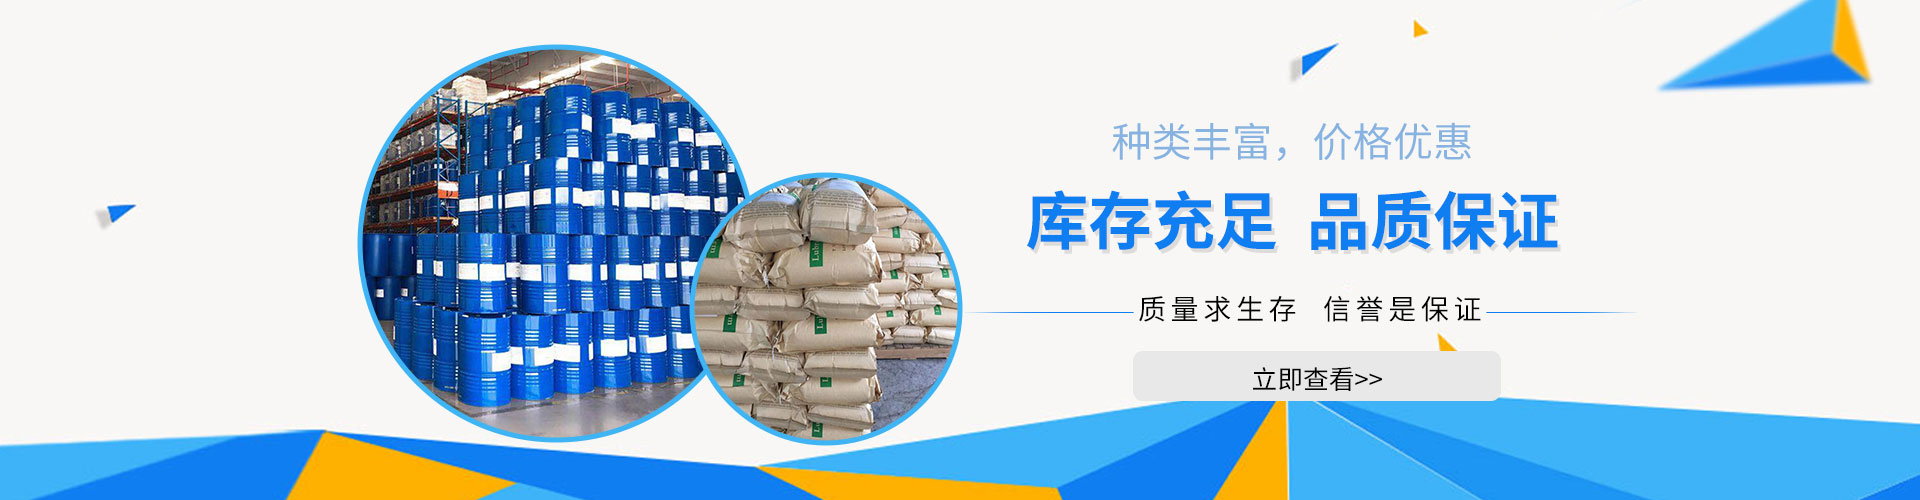 新疆工業級電解液碳酸亞乙烯酯生產企業出售